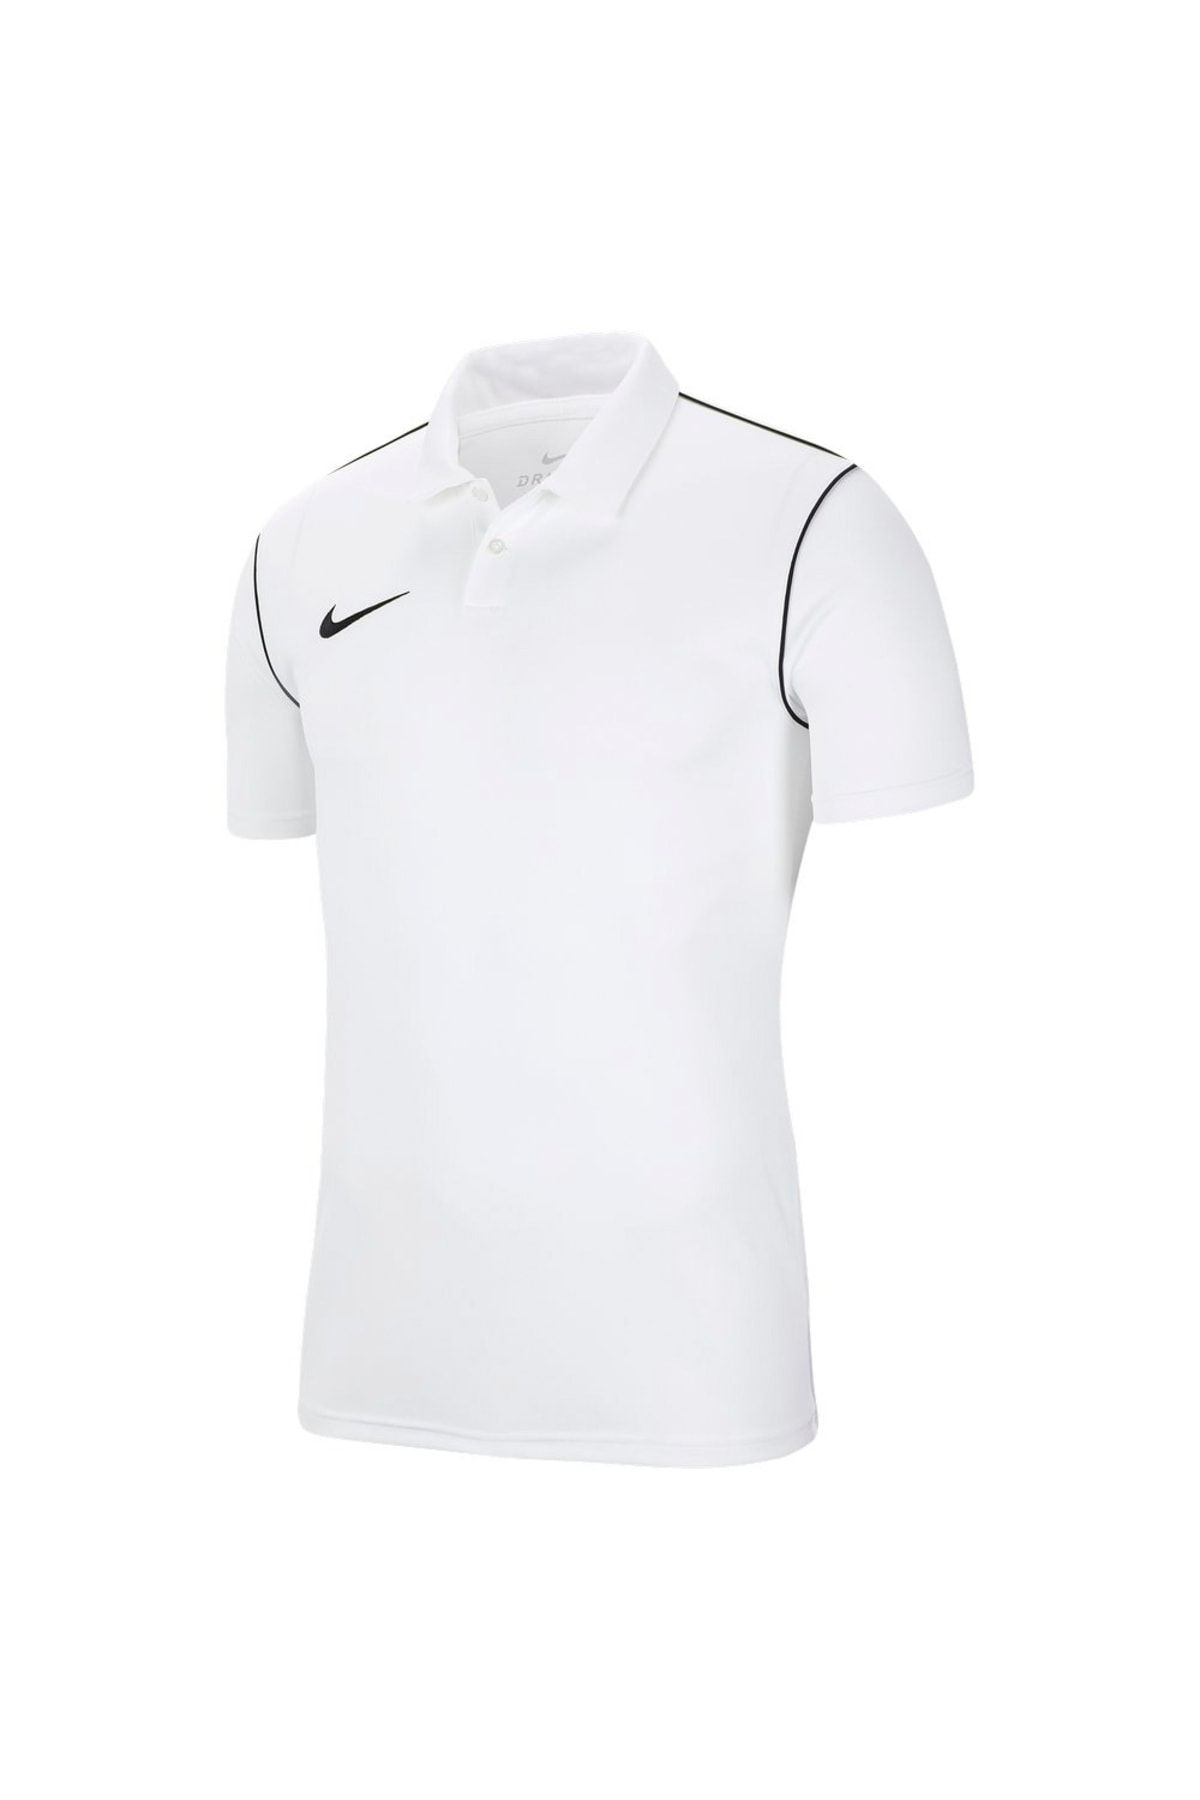 Nike Bv6879-100 Park 20 Polo Erkek Polo T-shirt